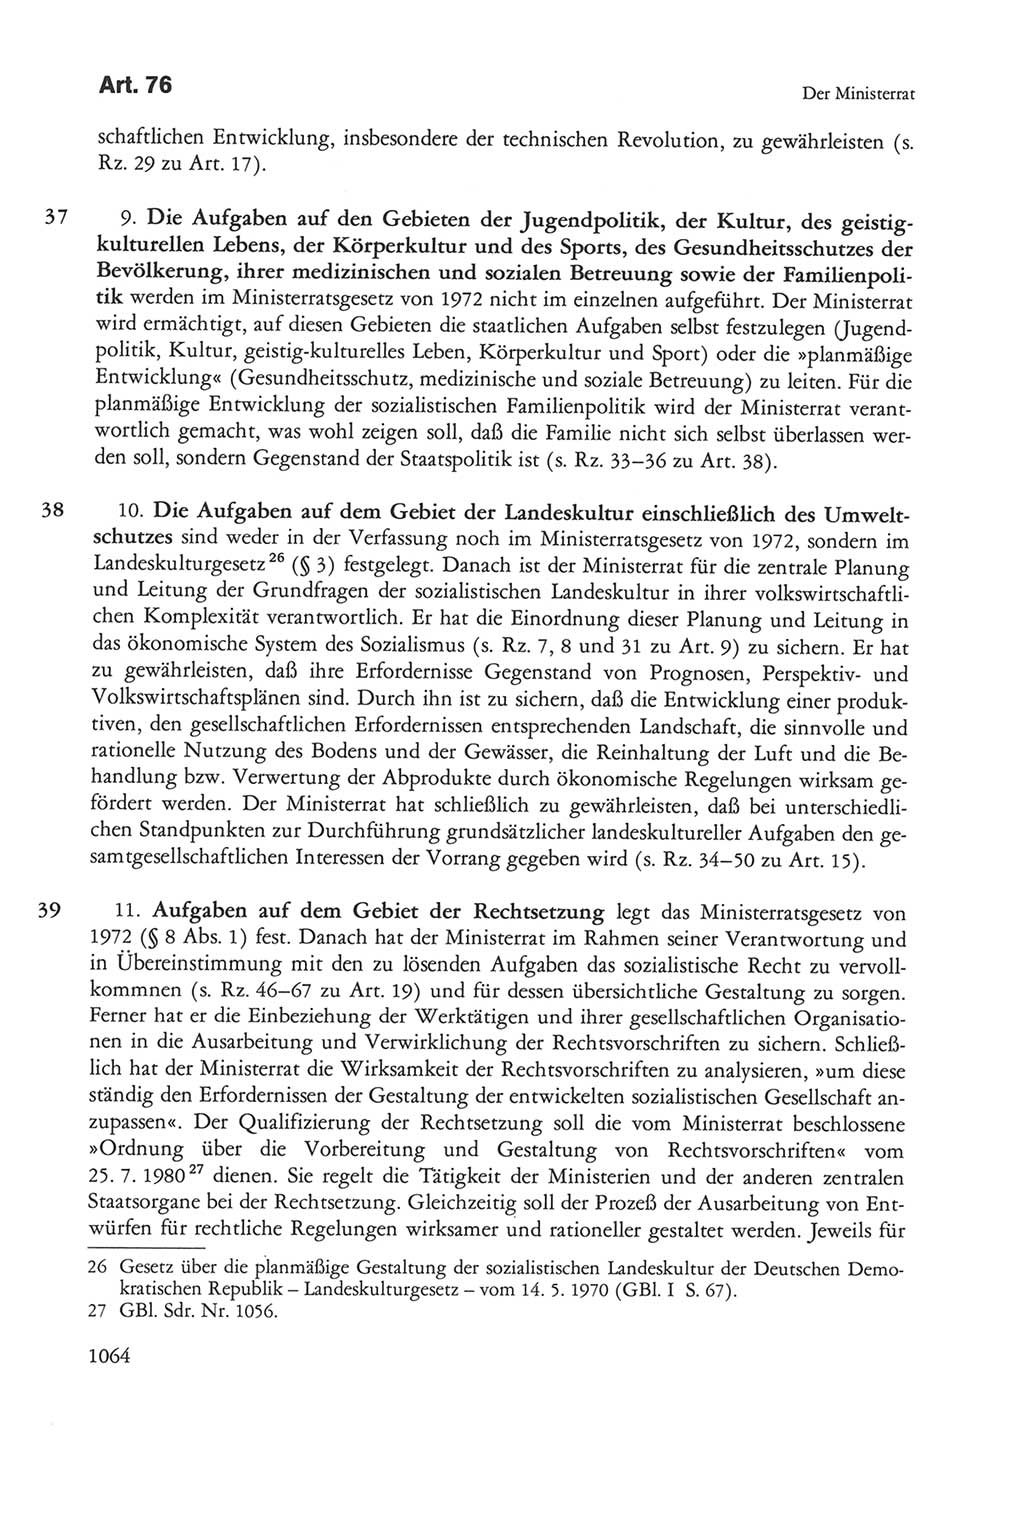 Die sozialistische Verfassung der Deutschen Demokratischen Republik (DDR), Kommentar 1982, Seite 1064 (Soz. Verf. DDR Komm. 1982, S. 1064)